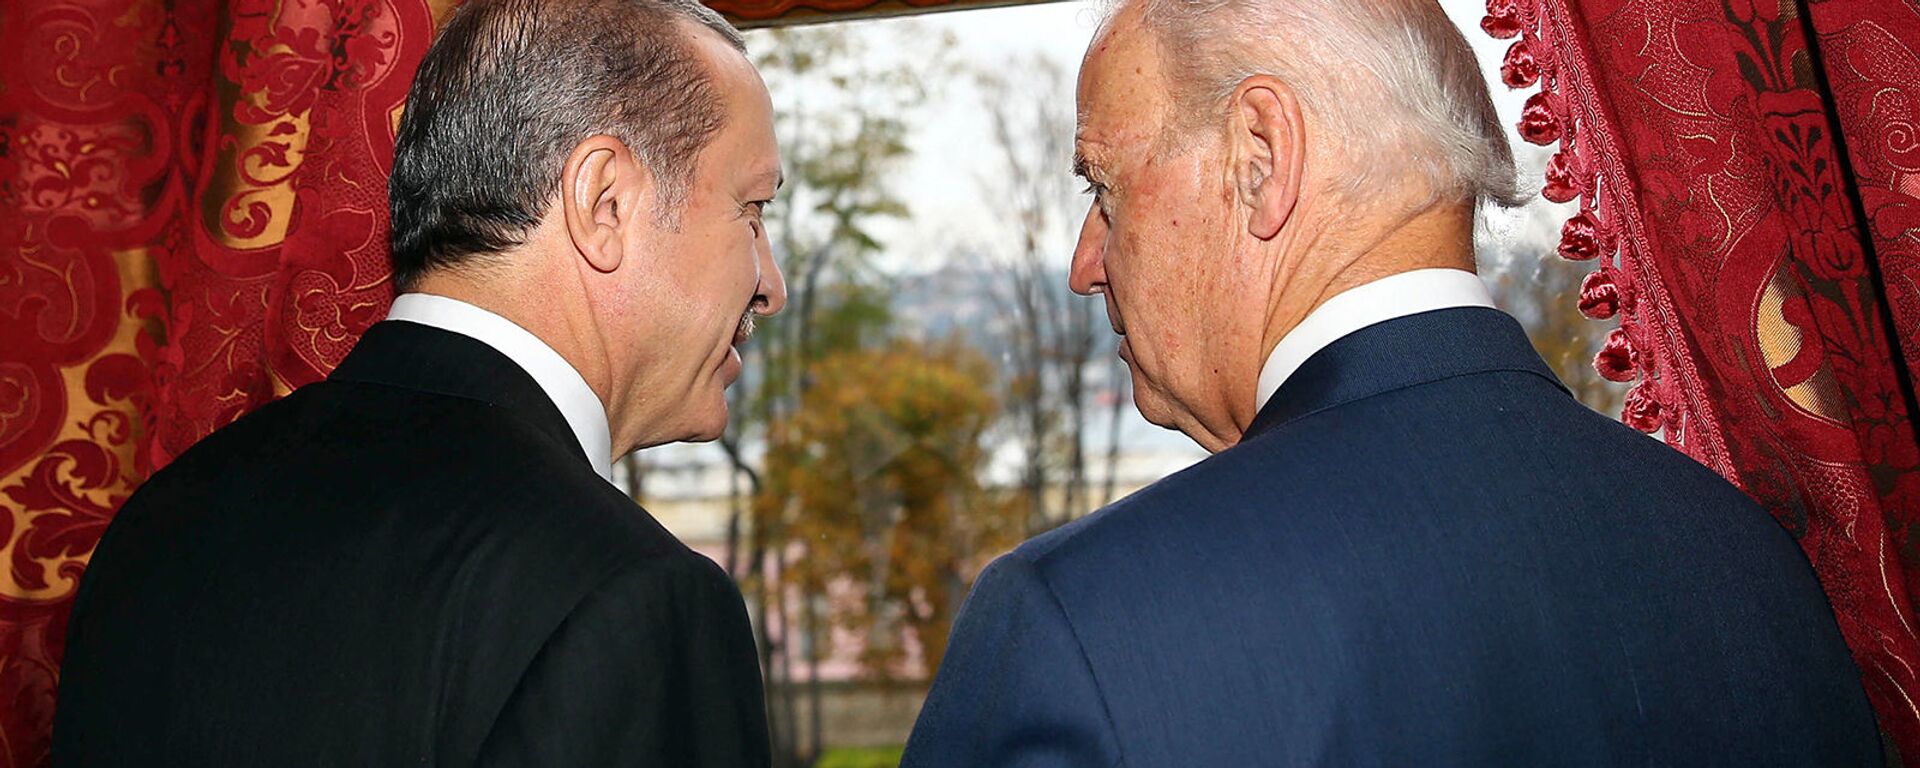 Беседа вице-президента США Джо Байдена с президентом Турции Реджепом Эрдоганом во дворце Бейлербейи (22 ноября 2014).  Стамбул - Sputnik Արմենիա, 1920, 22.04.2021